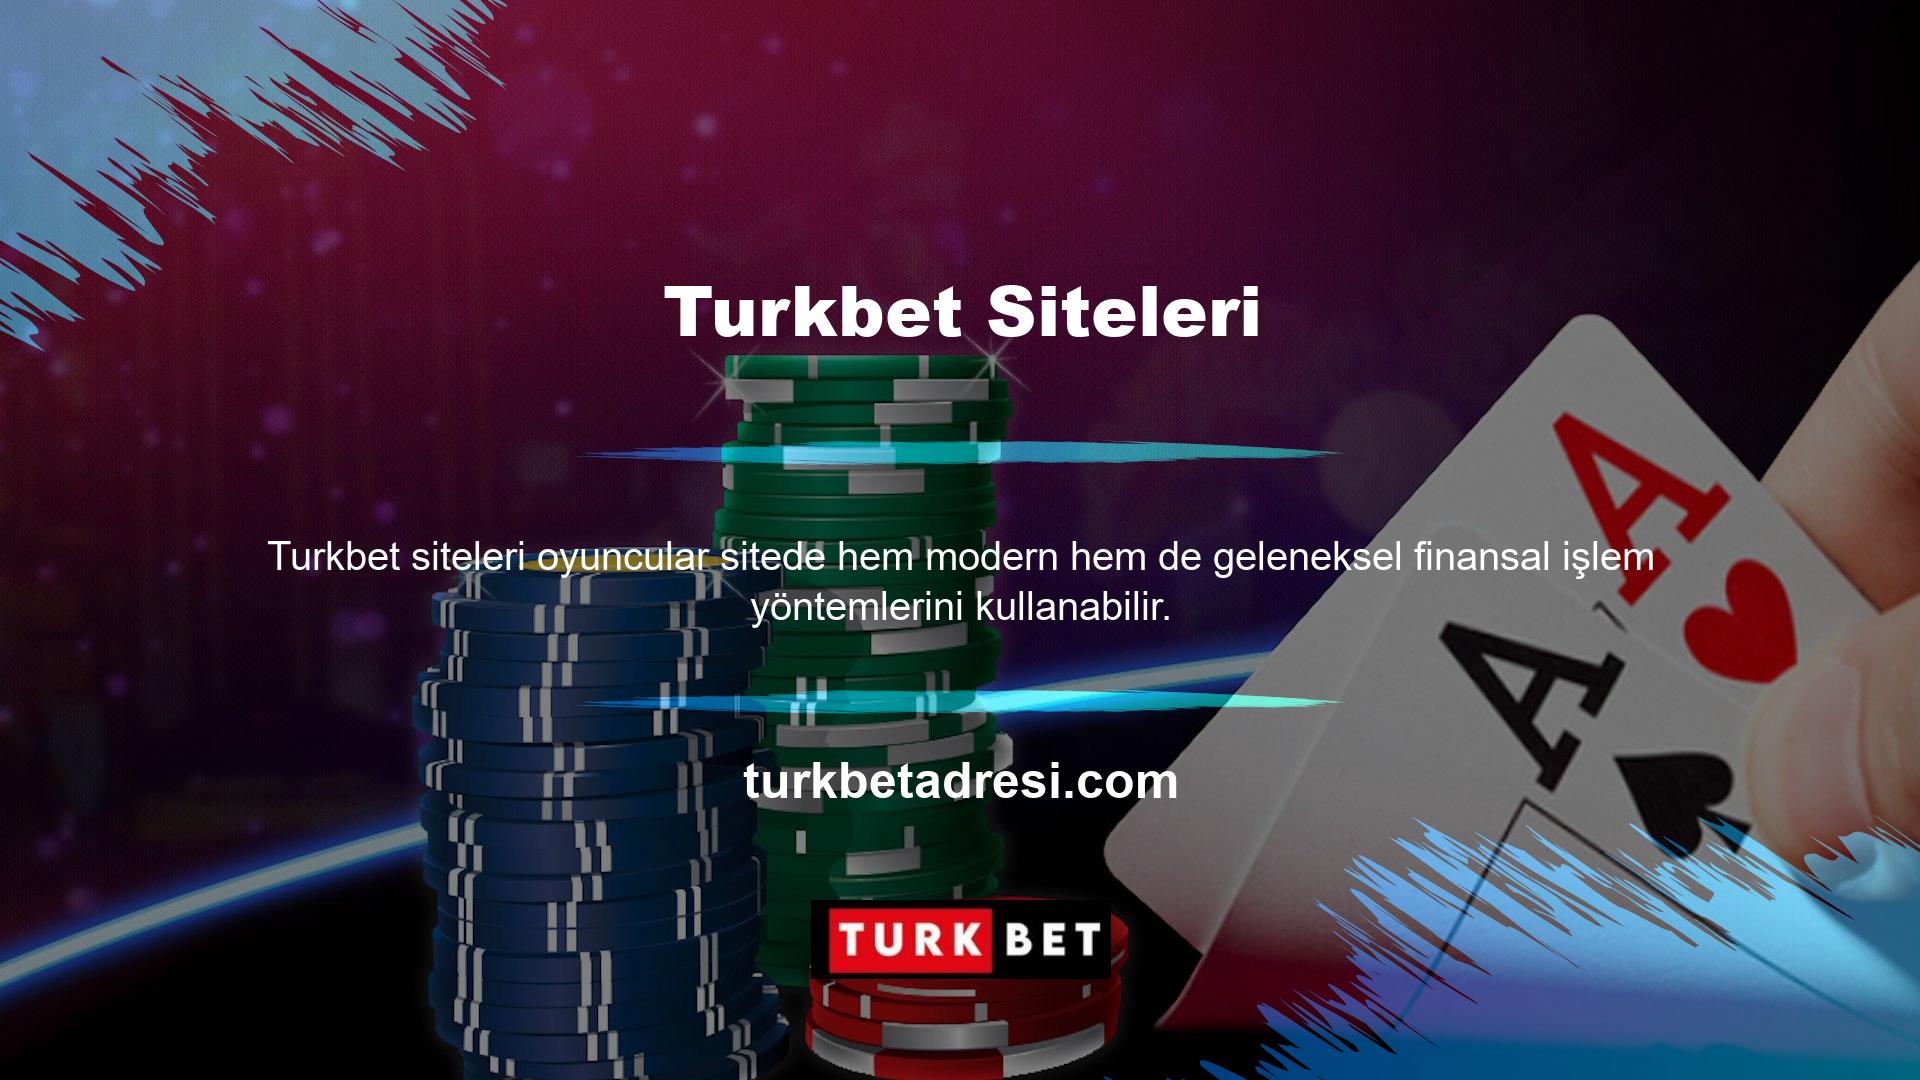 Turkbet bahis sitesi canlı telefon hatları üzerinden de üyelerine 7/24 anlık destek sunmaktadır